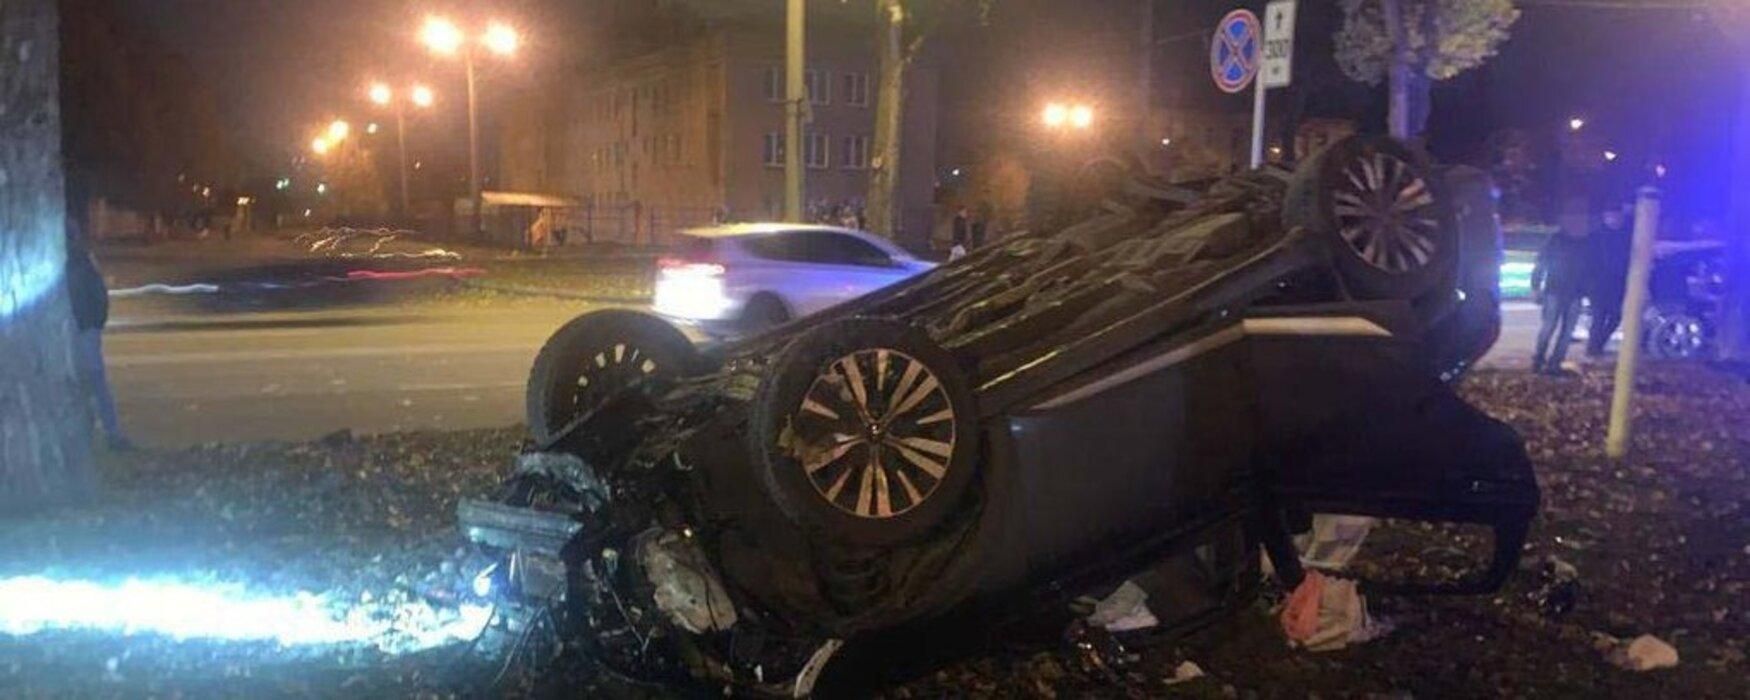 Моторошна ДТП з п'яним поліцейським у Харкові: у крові водія виявили 2,5 проміле алкоголю - 24 Канал